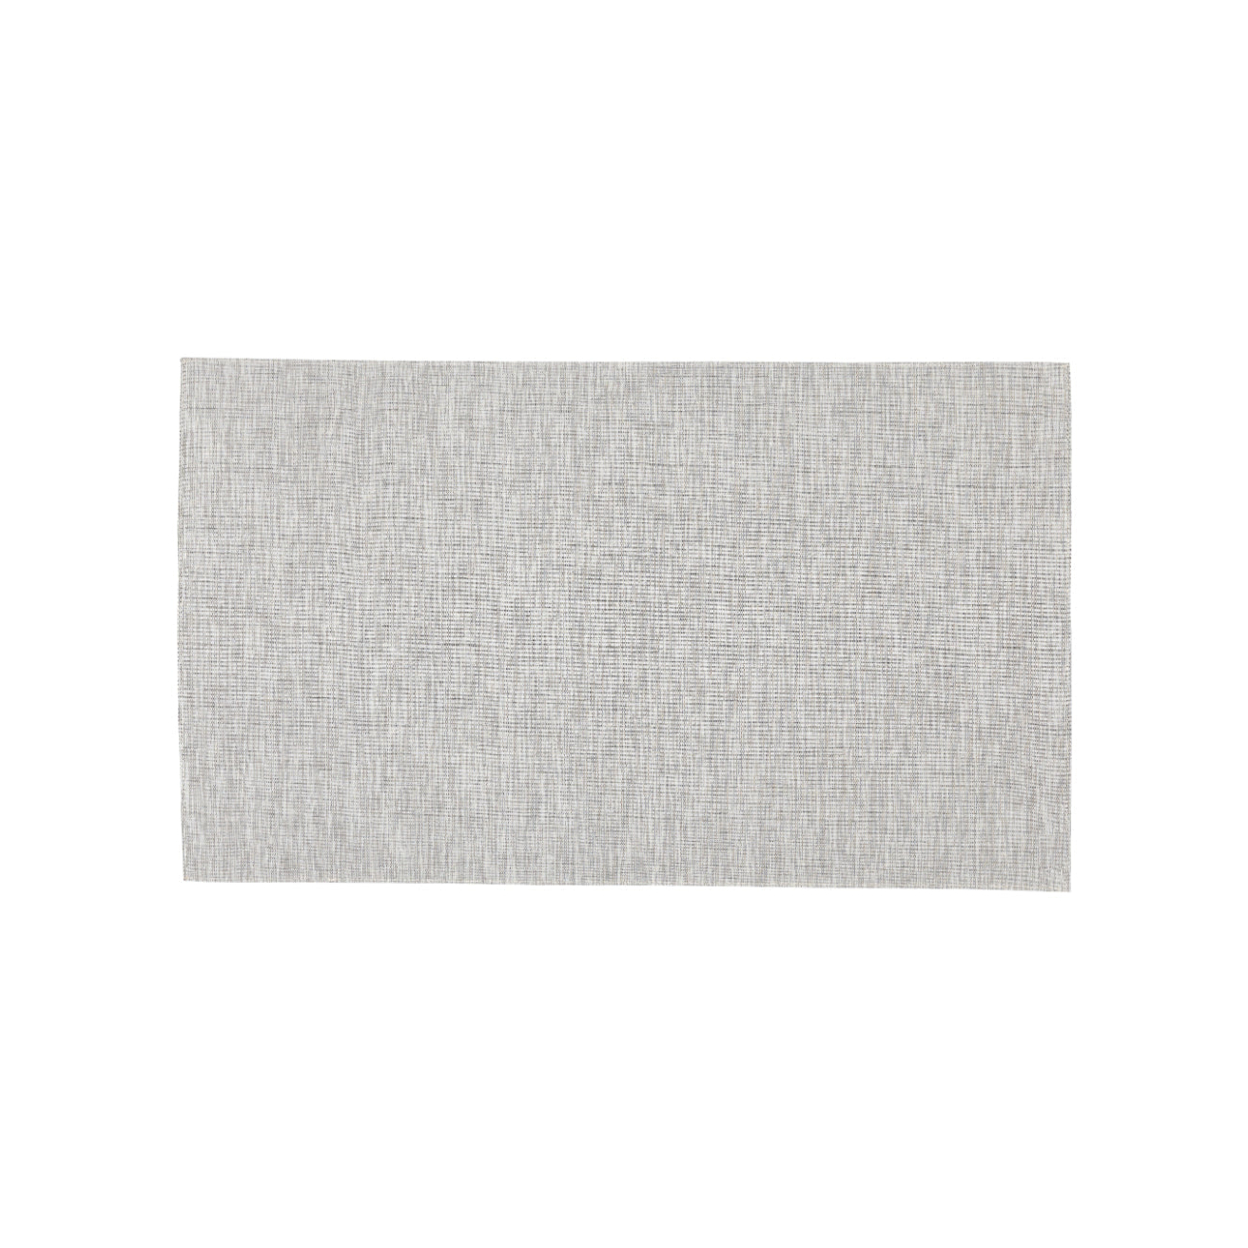 Indoor Outdoor Mat, Light Grey, 3' x 5'